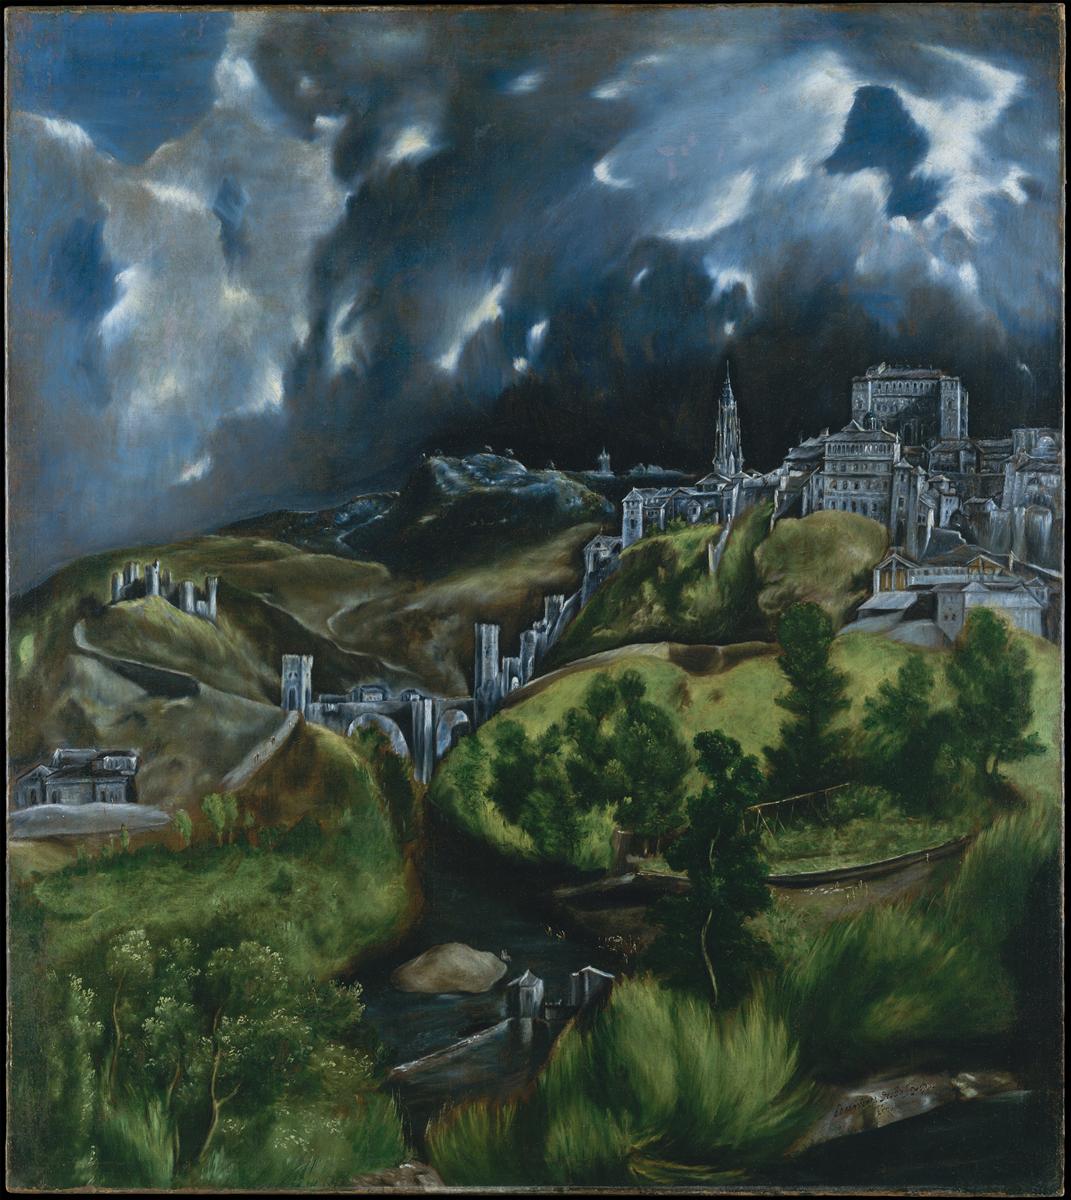 El+Greco-1541-1614 (232).jpg